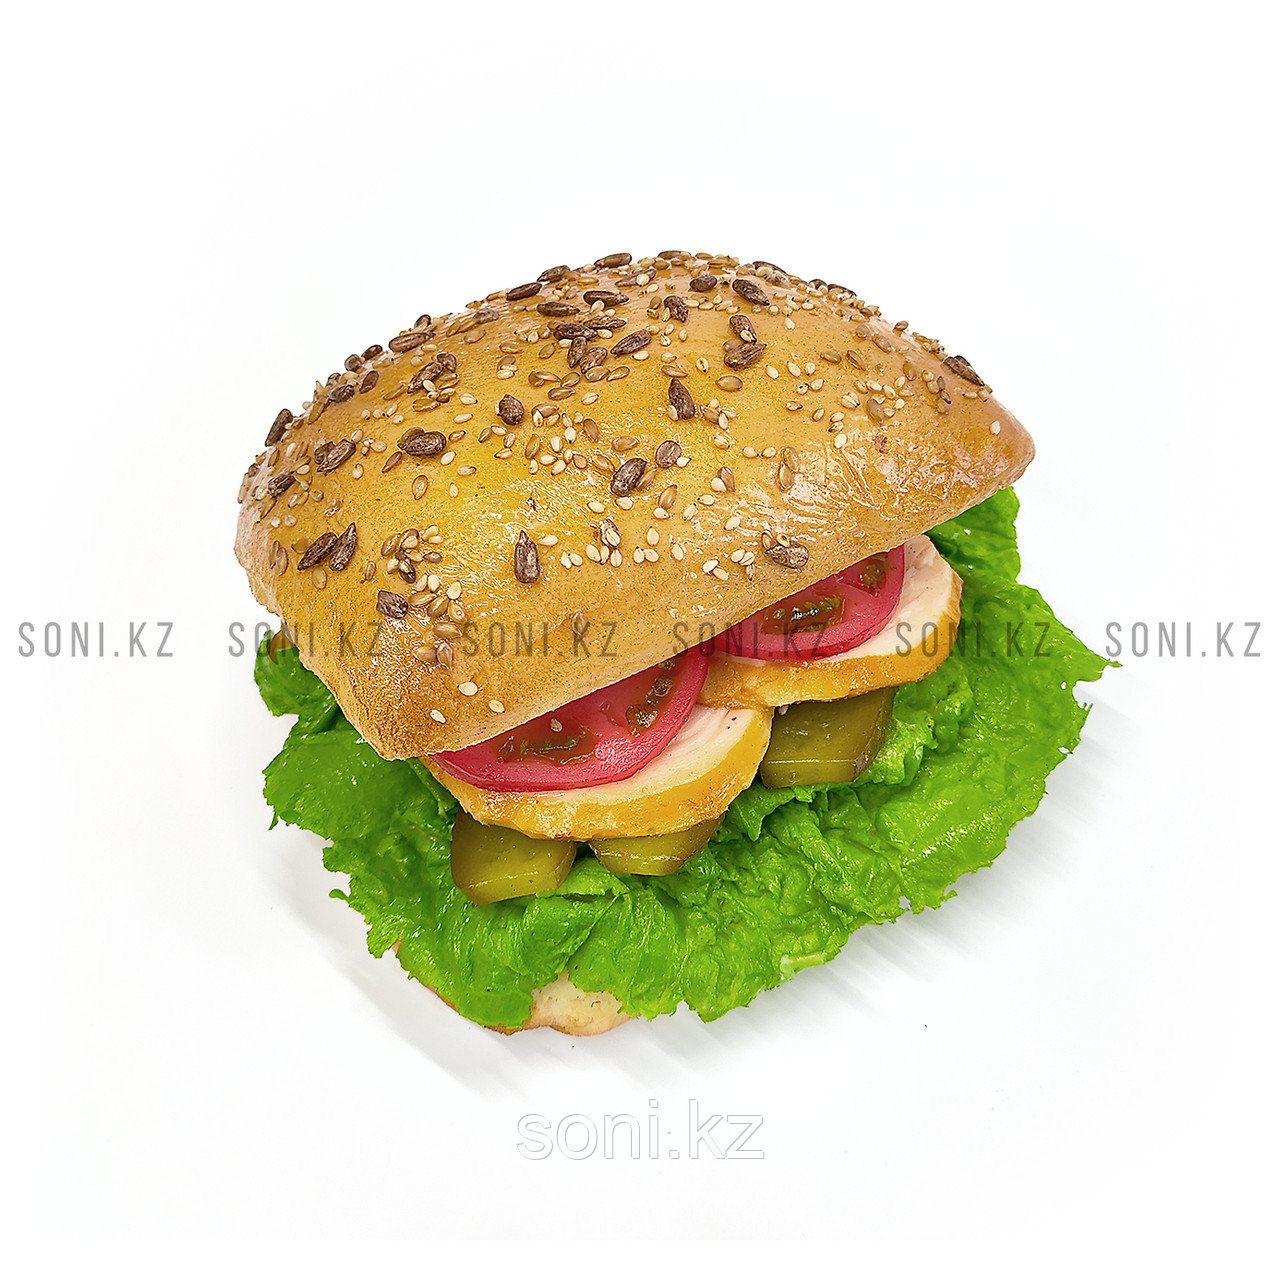 Сэндвич муляж (образцы блюд для витрины)